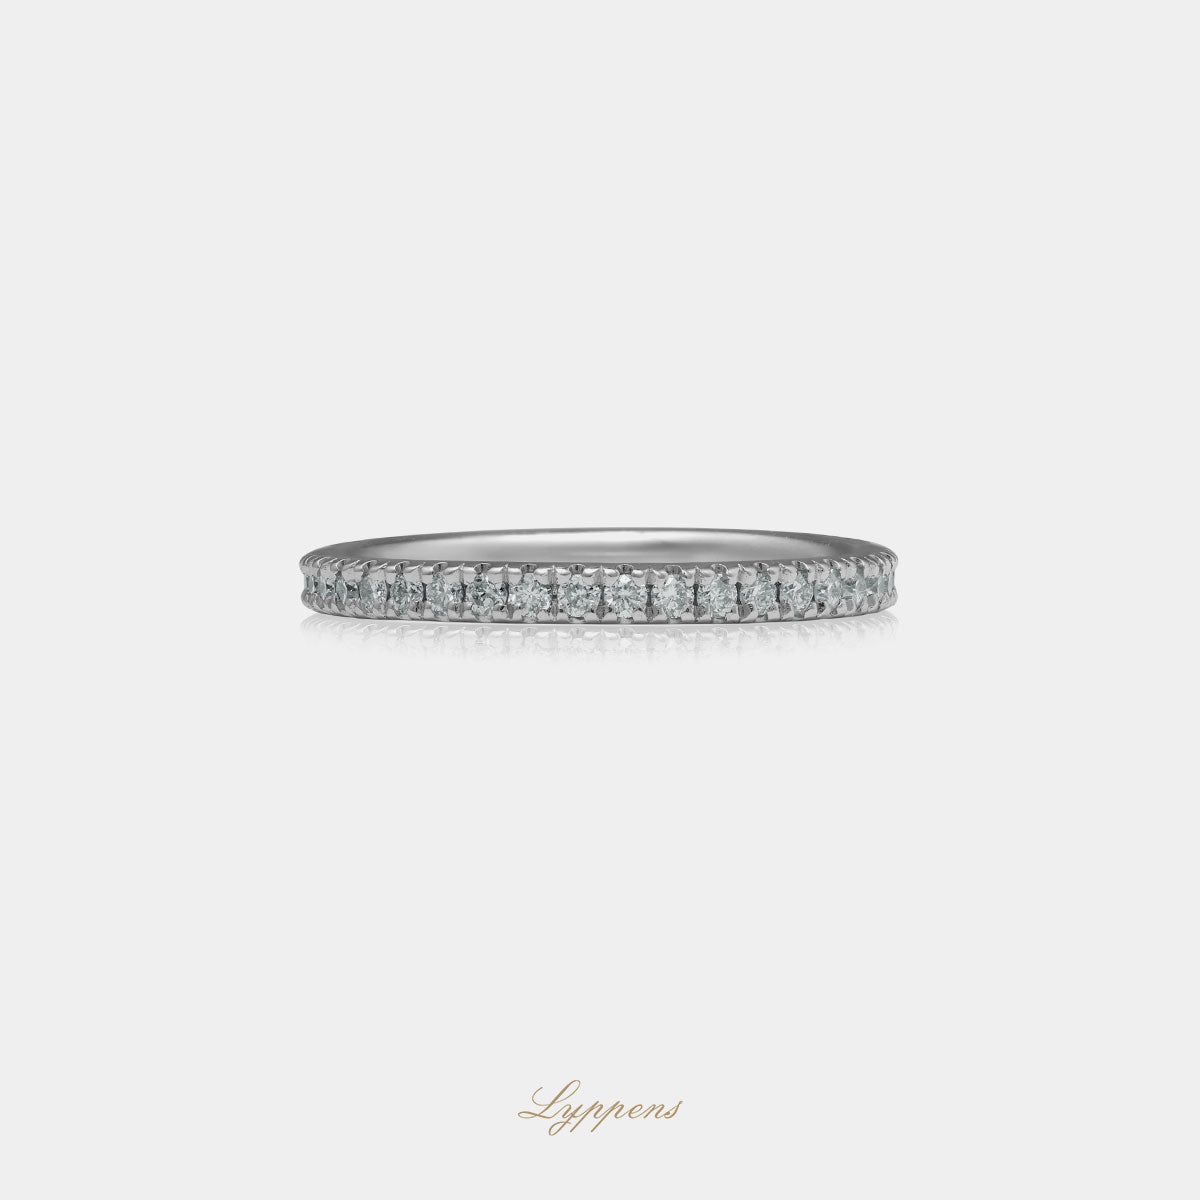 Witgouden alliance ring gezet met briljant geslepen diamant met een totaalgewicht van 0.50ct.